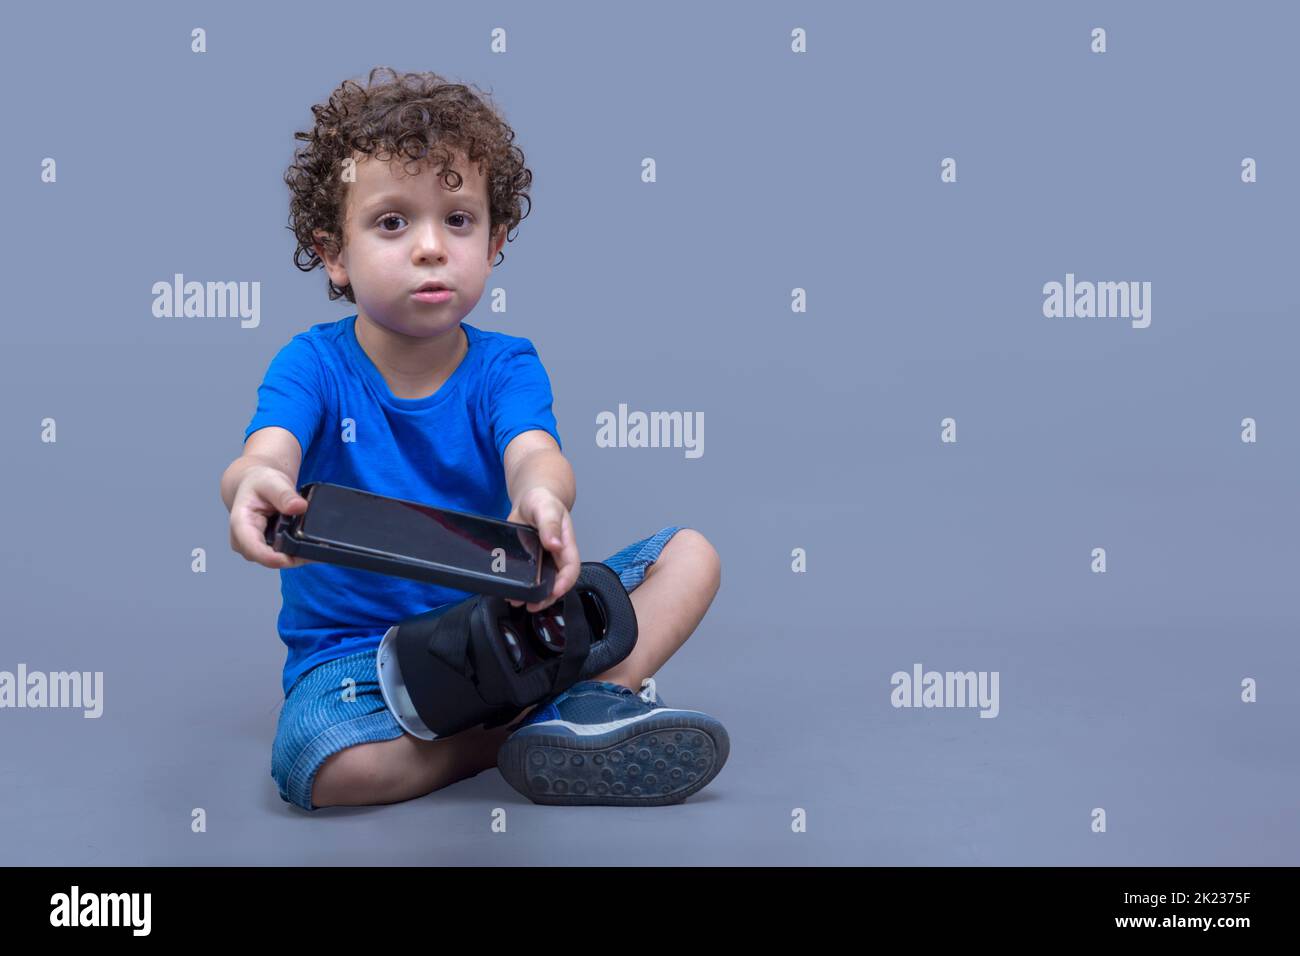 Kleiner Junge mit einer Virtual-Reality-Brille in den Händen, der neugierig auf ihre Funktionsweise schaut Stockfoto